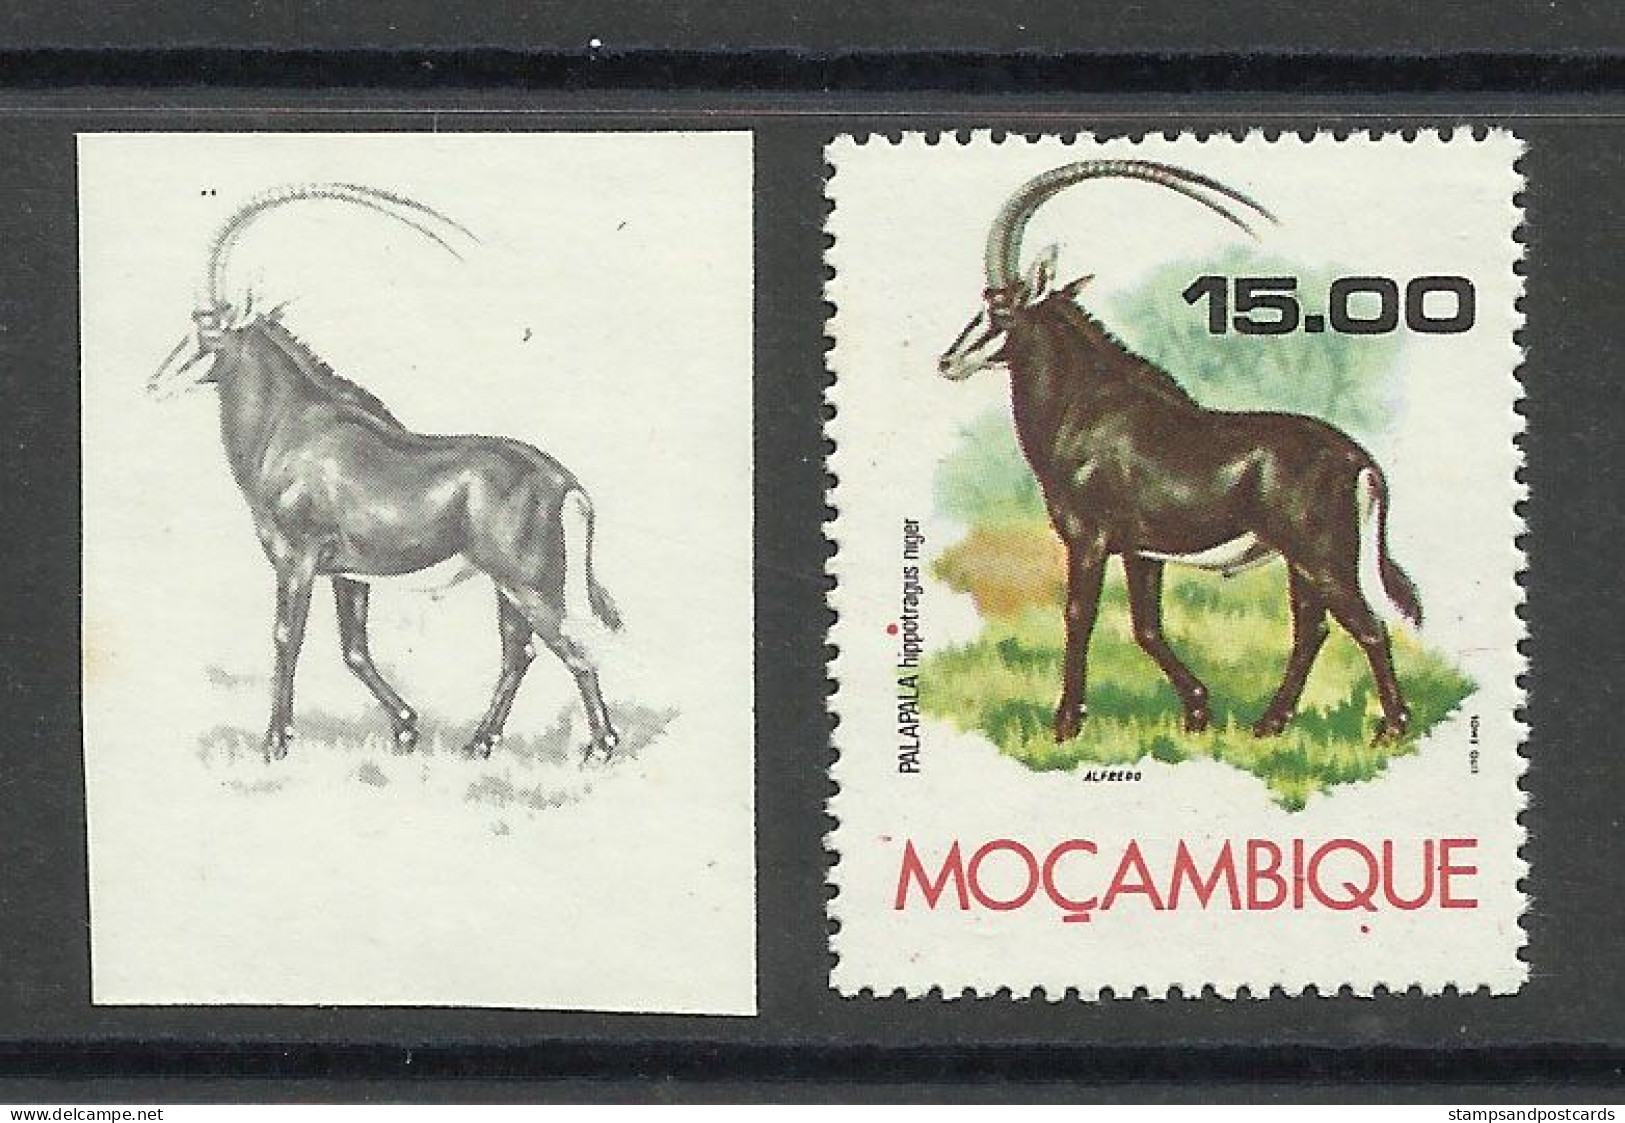 Mozambique 1976 Preuve De Couleur Hippotrague Noir Moçambique 1976 Color Proof Sable Antelope - Neushoorn